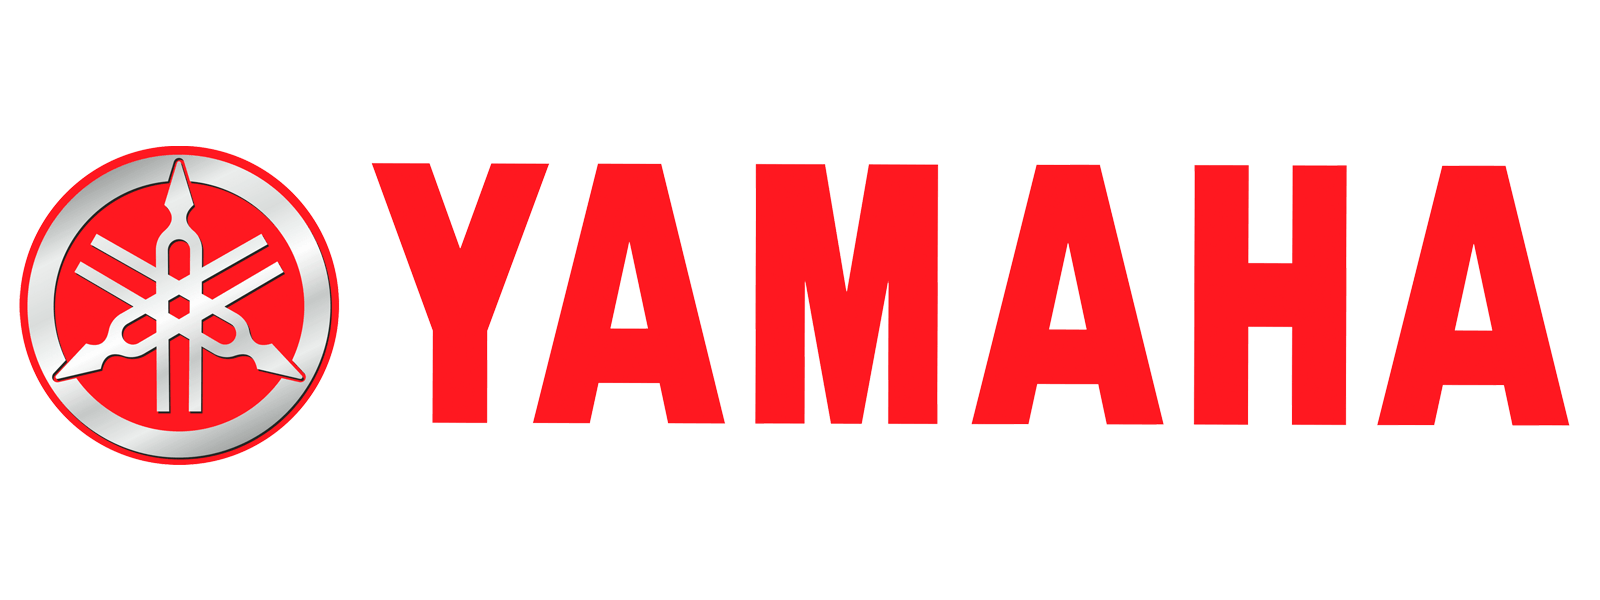 Yammah Logo - Yamaha motorcycle logo Meaning and History, symbol Yamaha